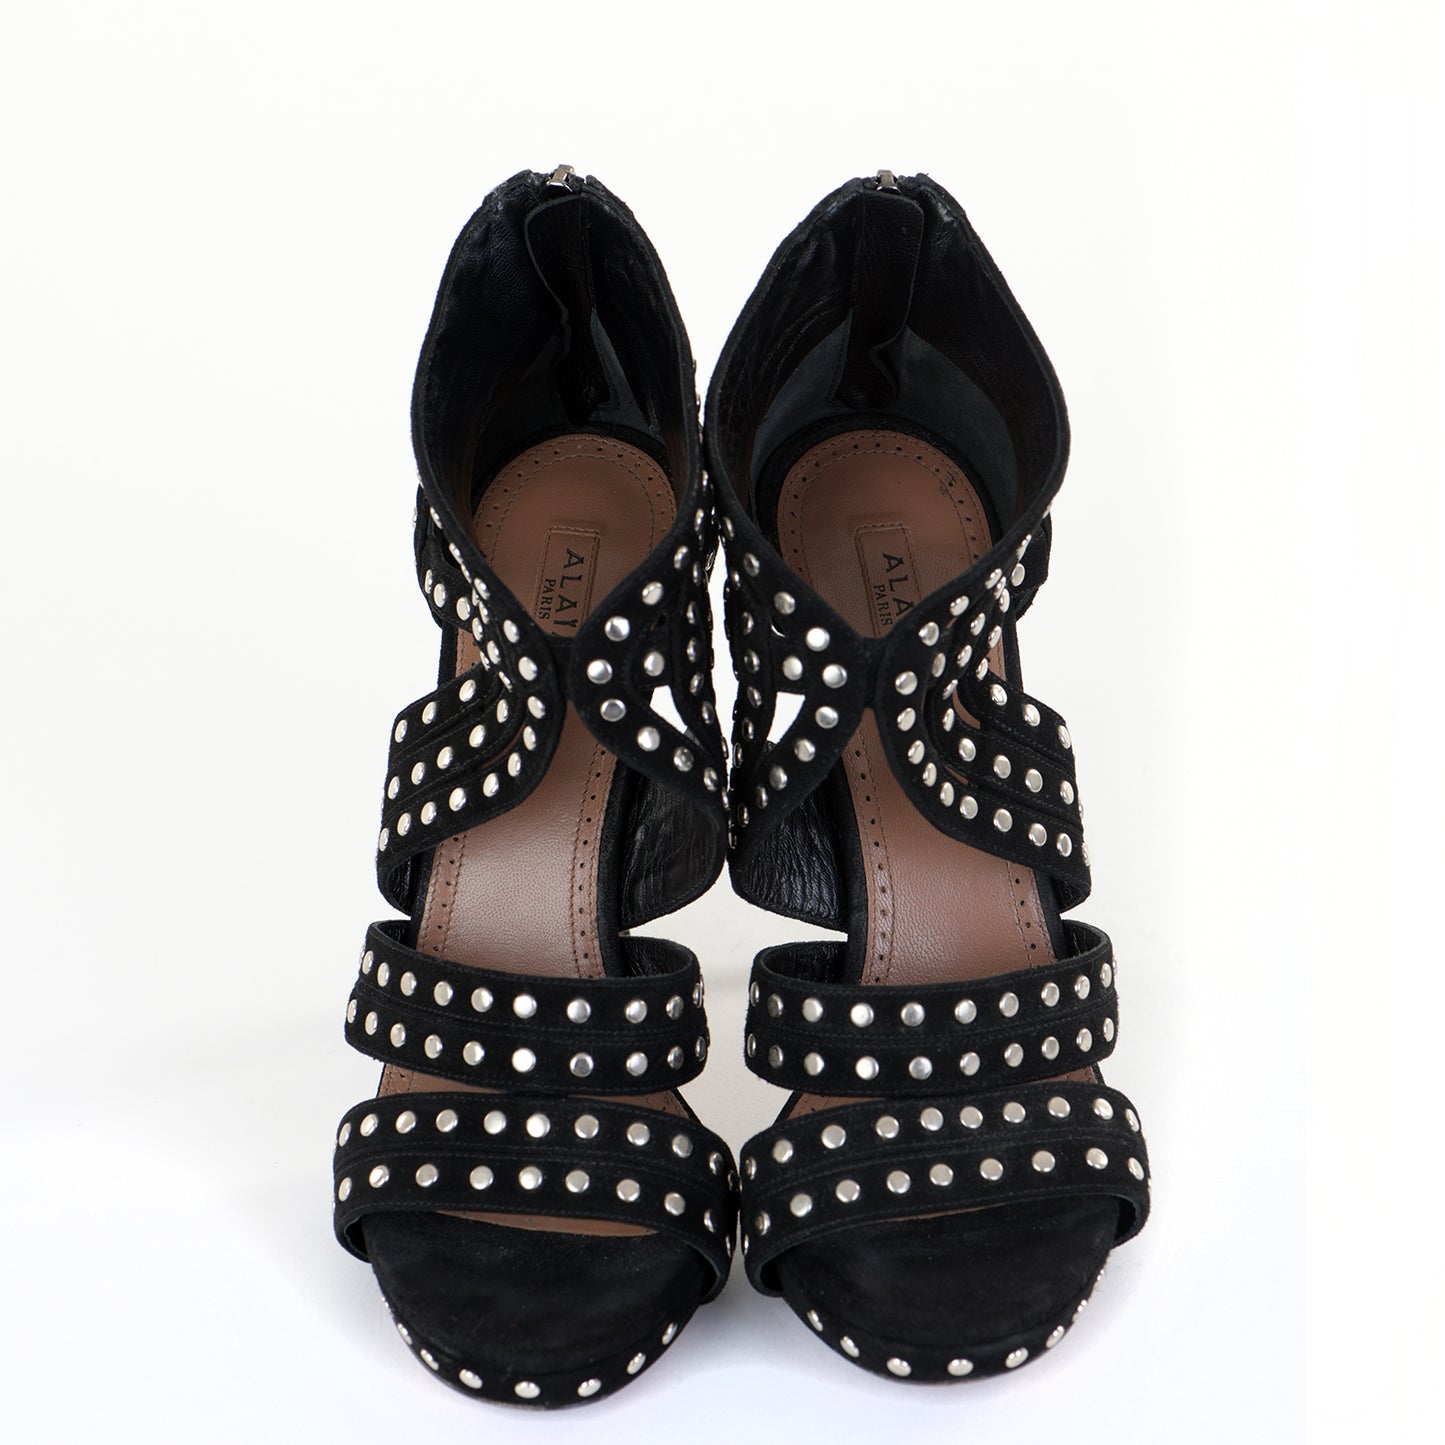 Black Suede Studded Platform Sandals